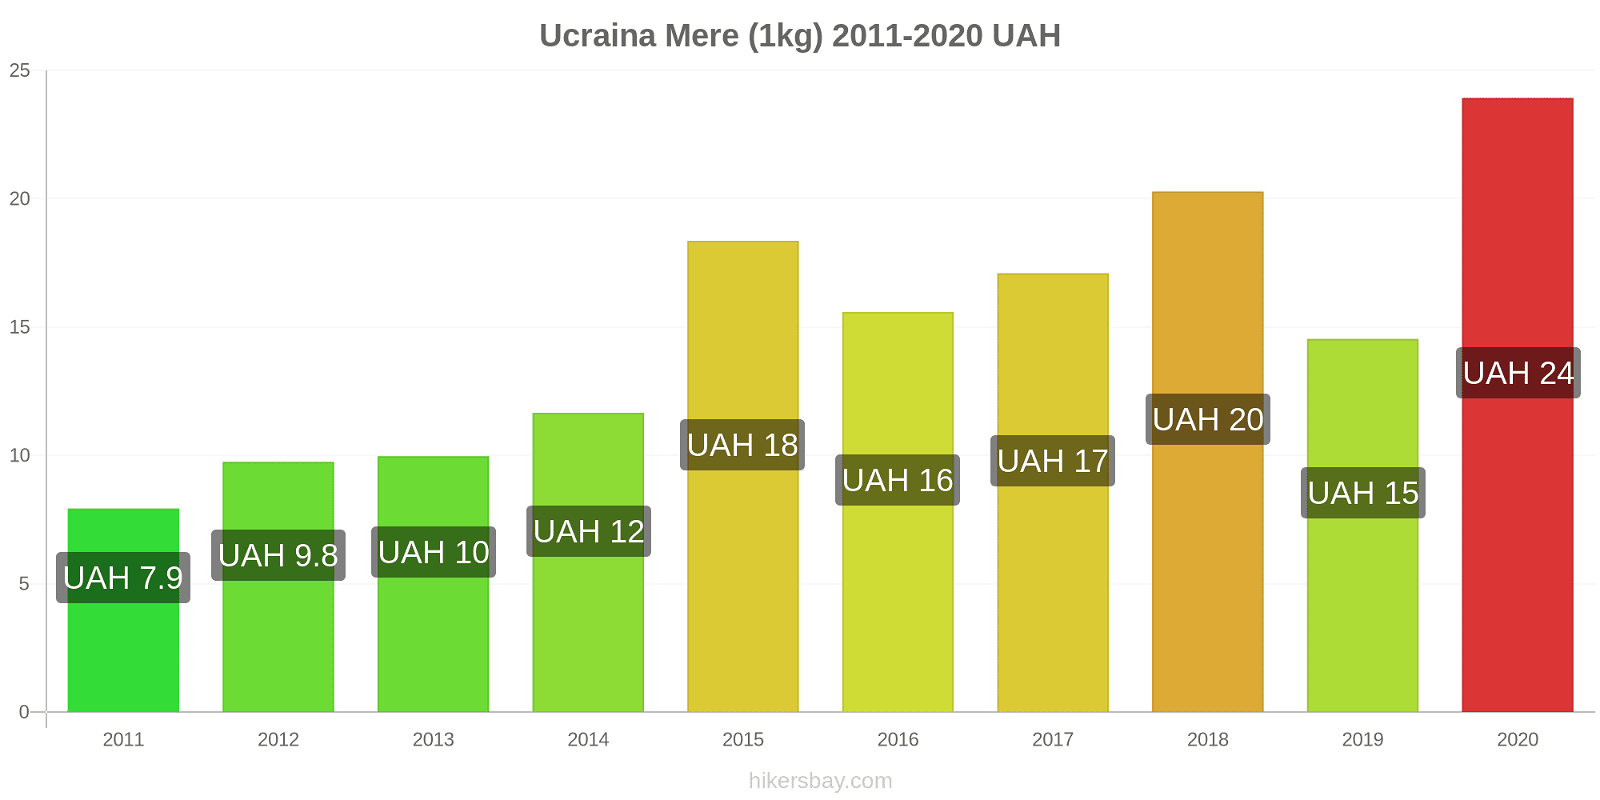 Ucraina modificări de preț Mere (1kg) hikersbay.com